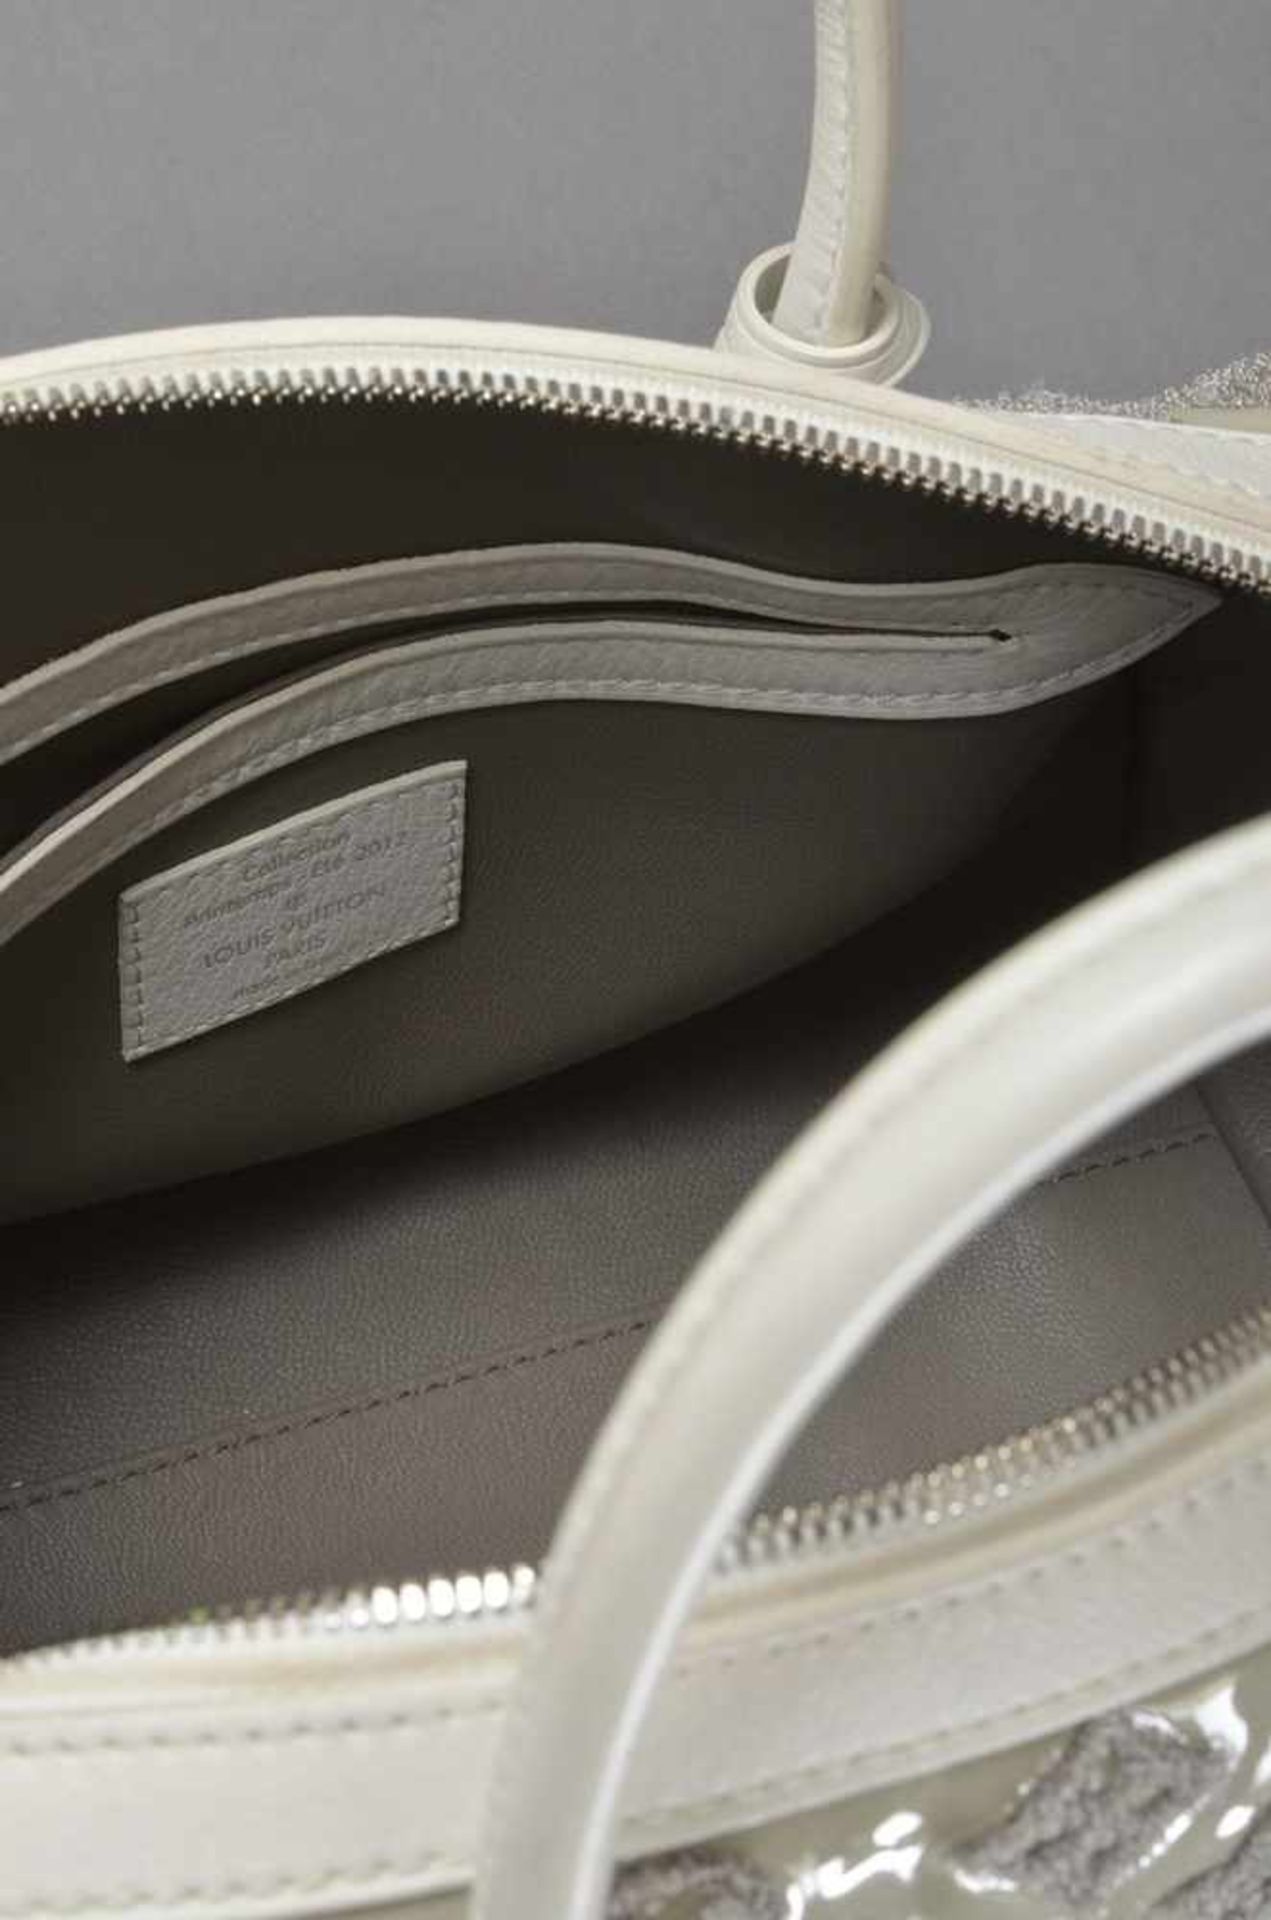 Louis Vuitton "Speedy Round" Tasche, Lack mit Stoffmonogramm in Gris Art Deco mit weißem Leder, LV - Image 3 of 3